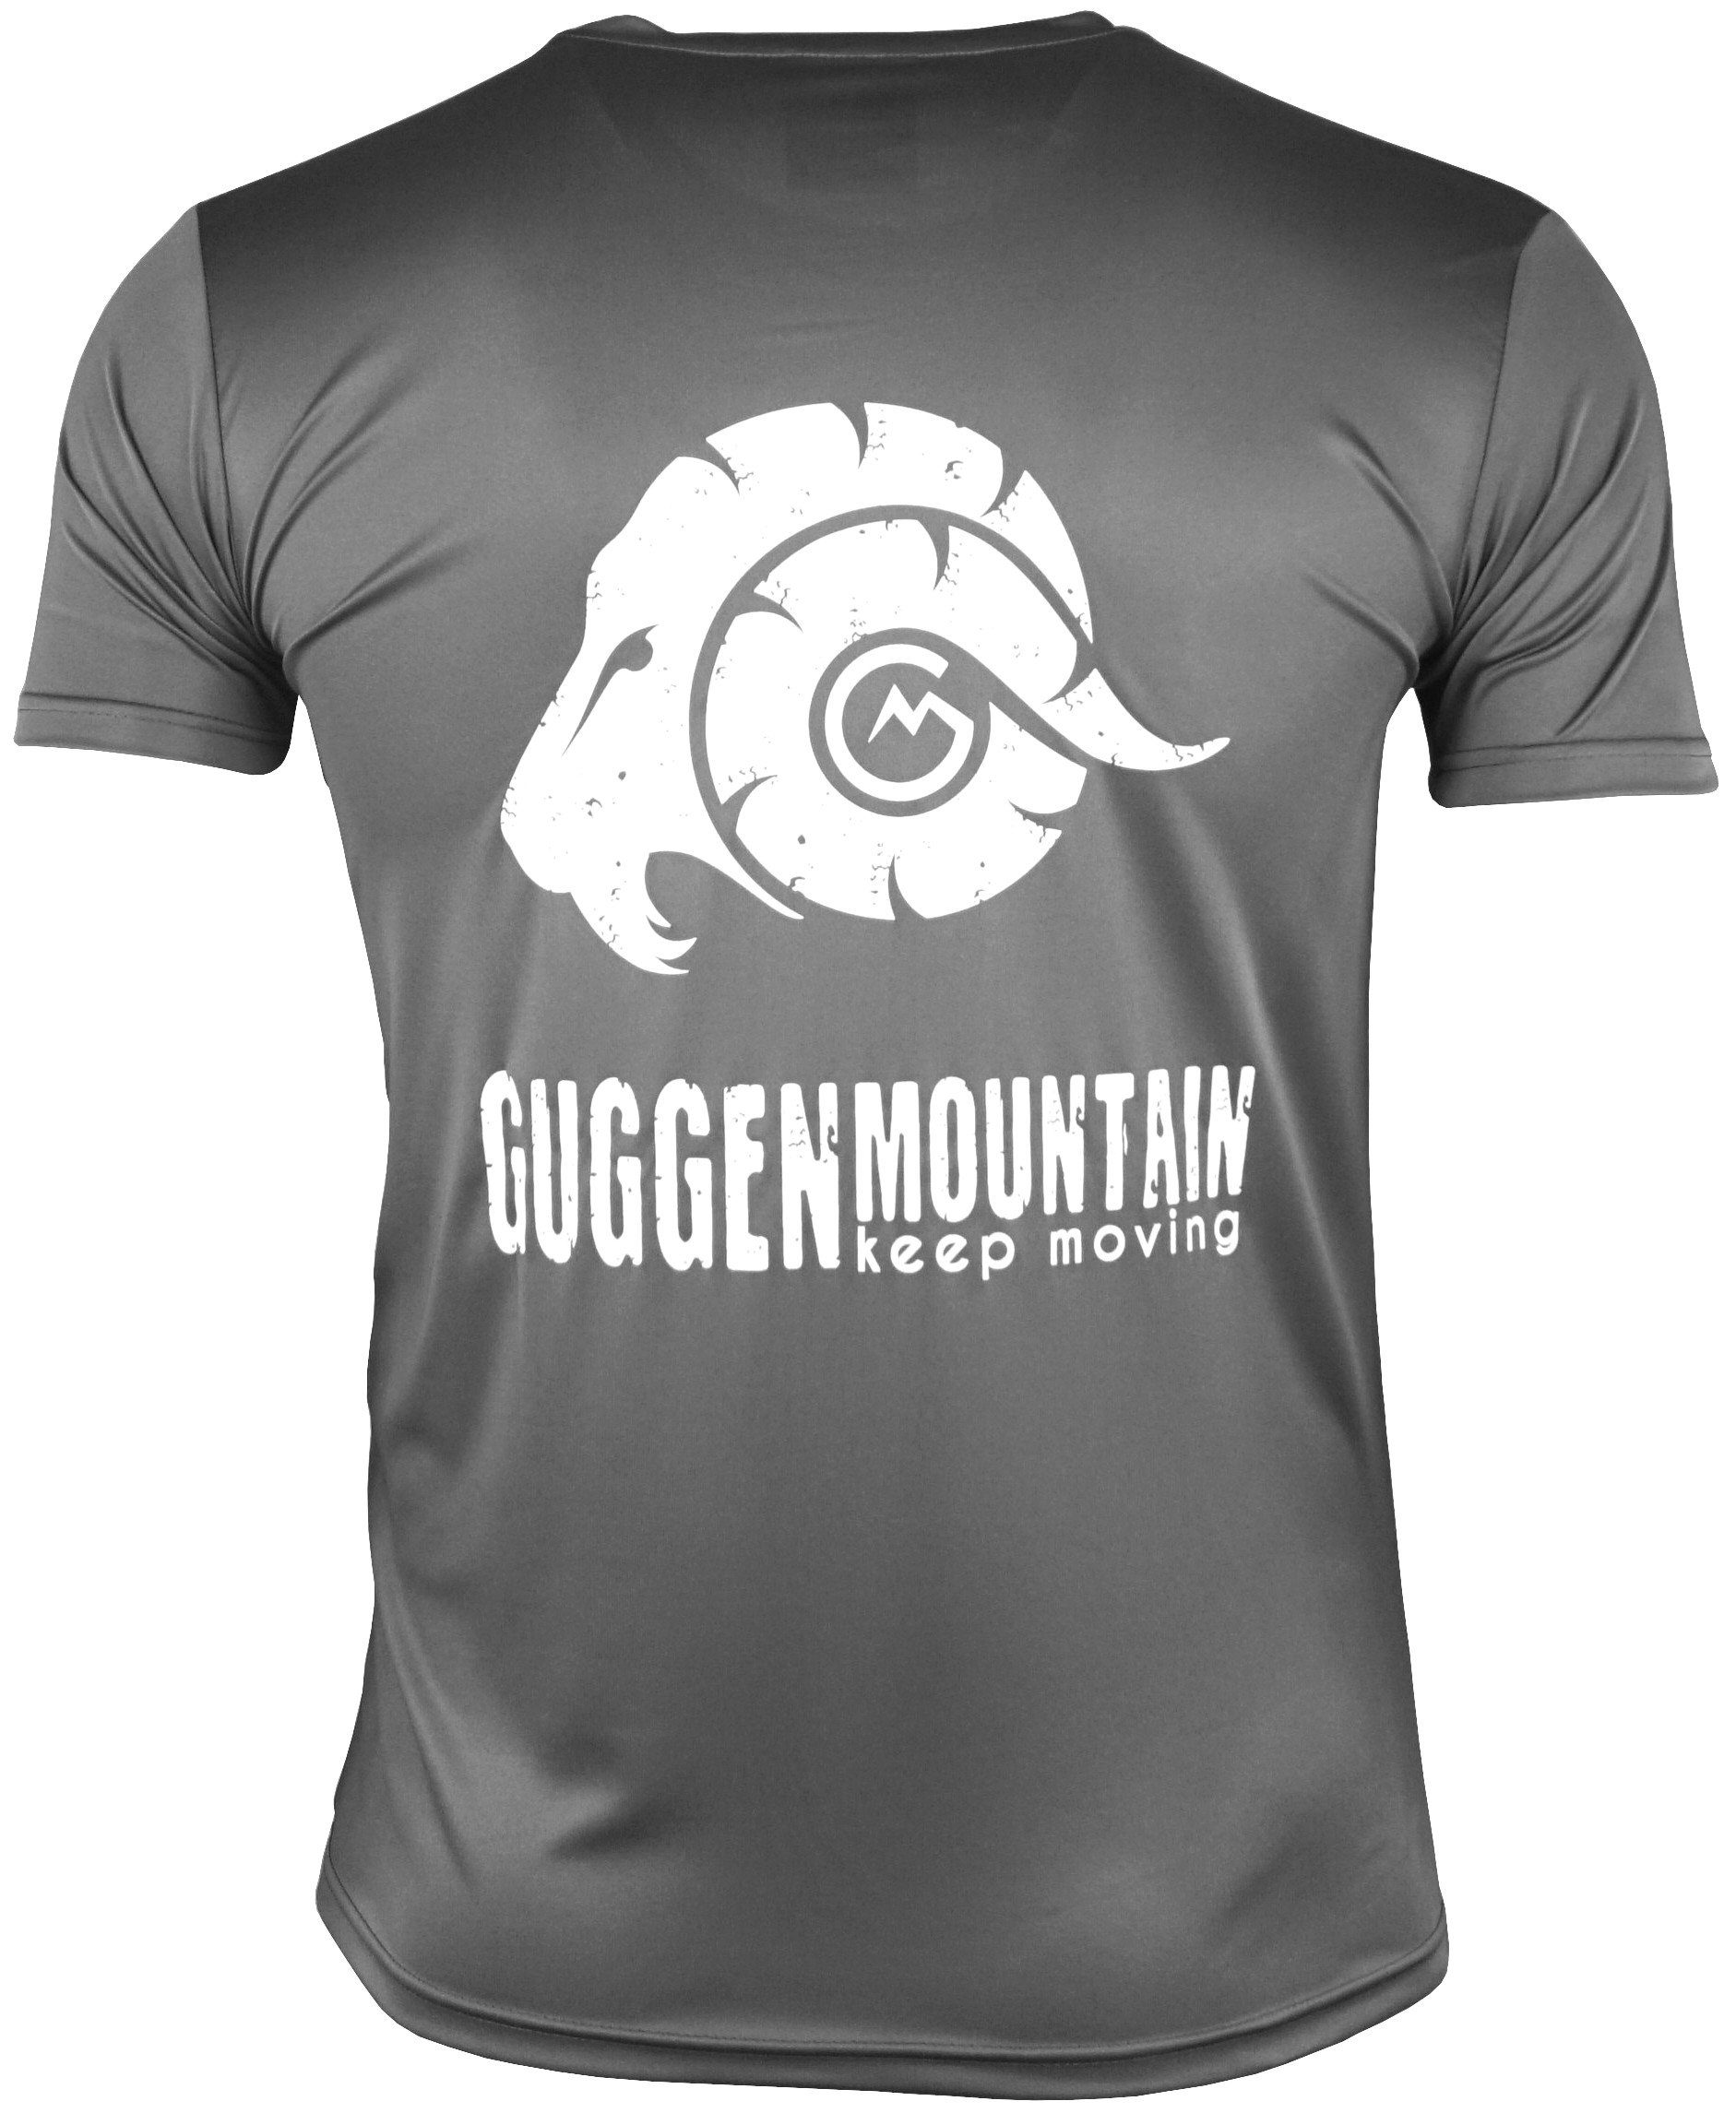 FW04 Unifarben, Mountain Sportshirt Funktionsshirt in Dunkelgrau-MIT-Logo Logo Kurzarm T-Shirt Herren GUGGEN Funktionsshirt